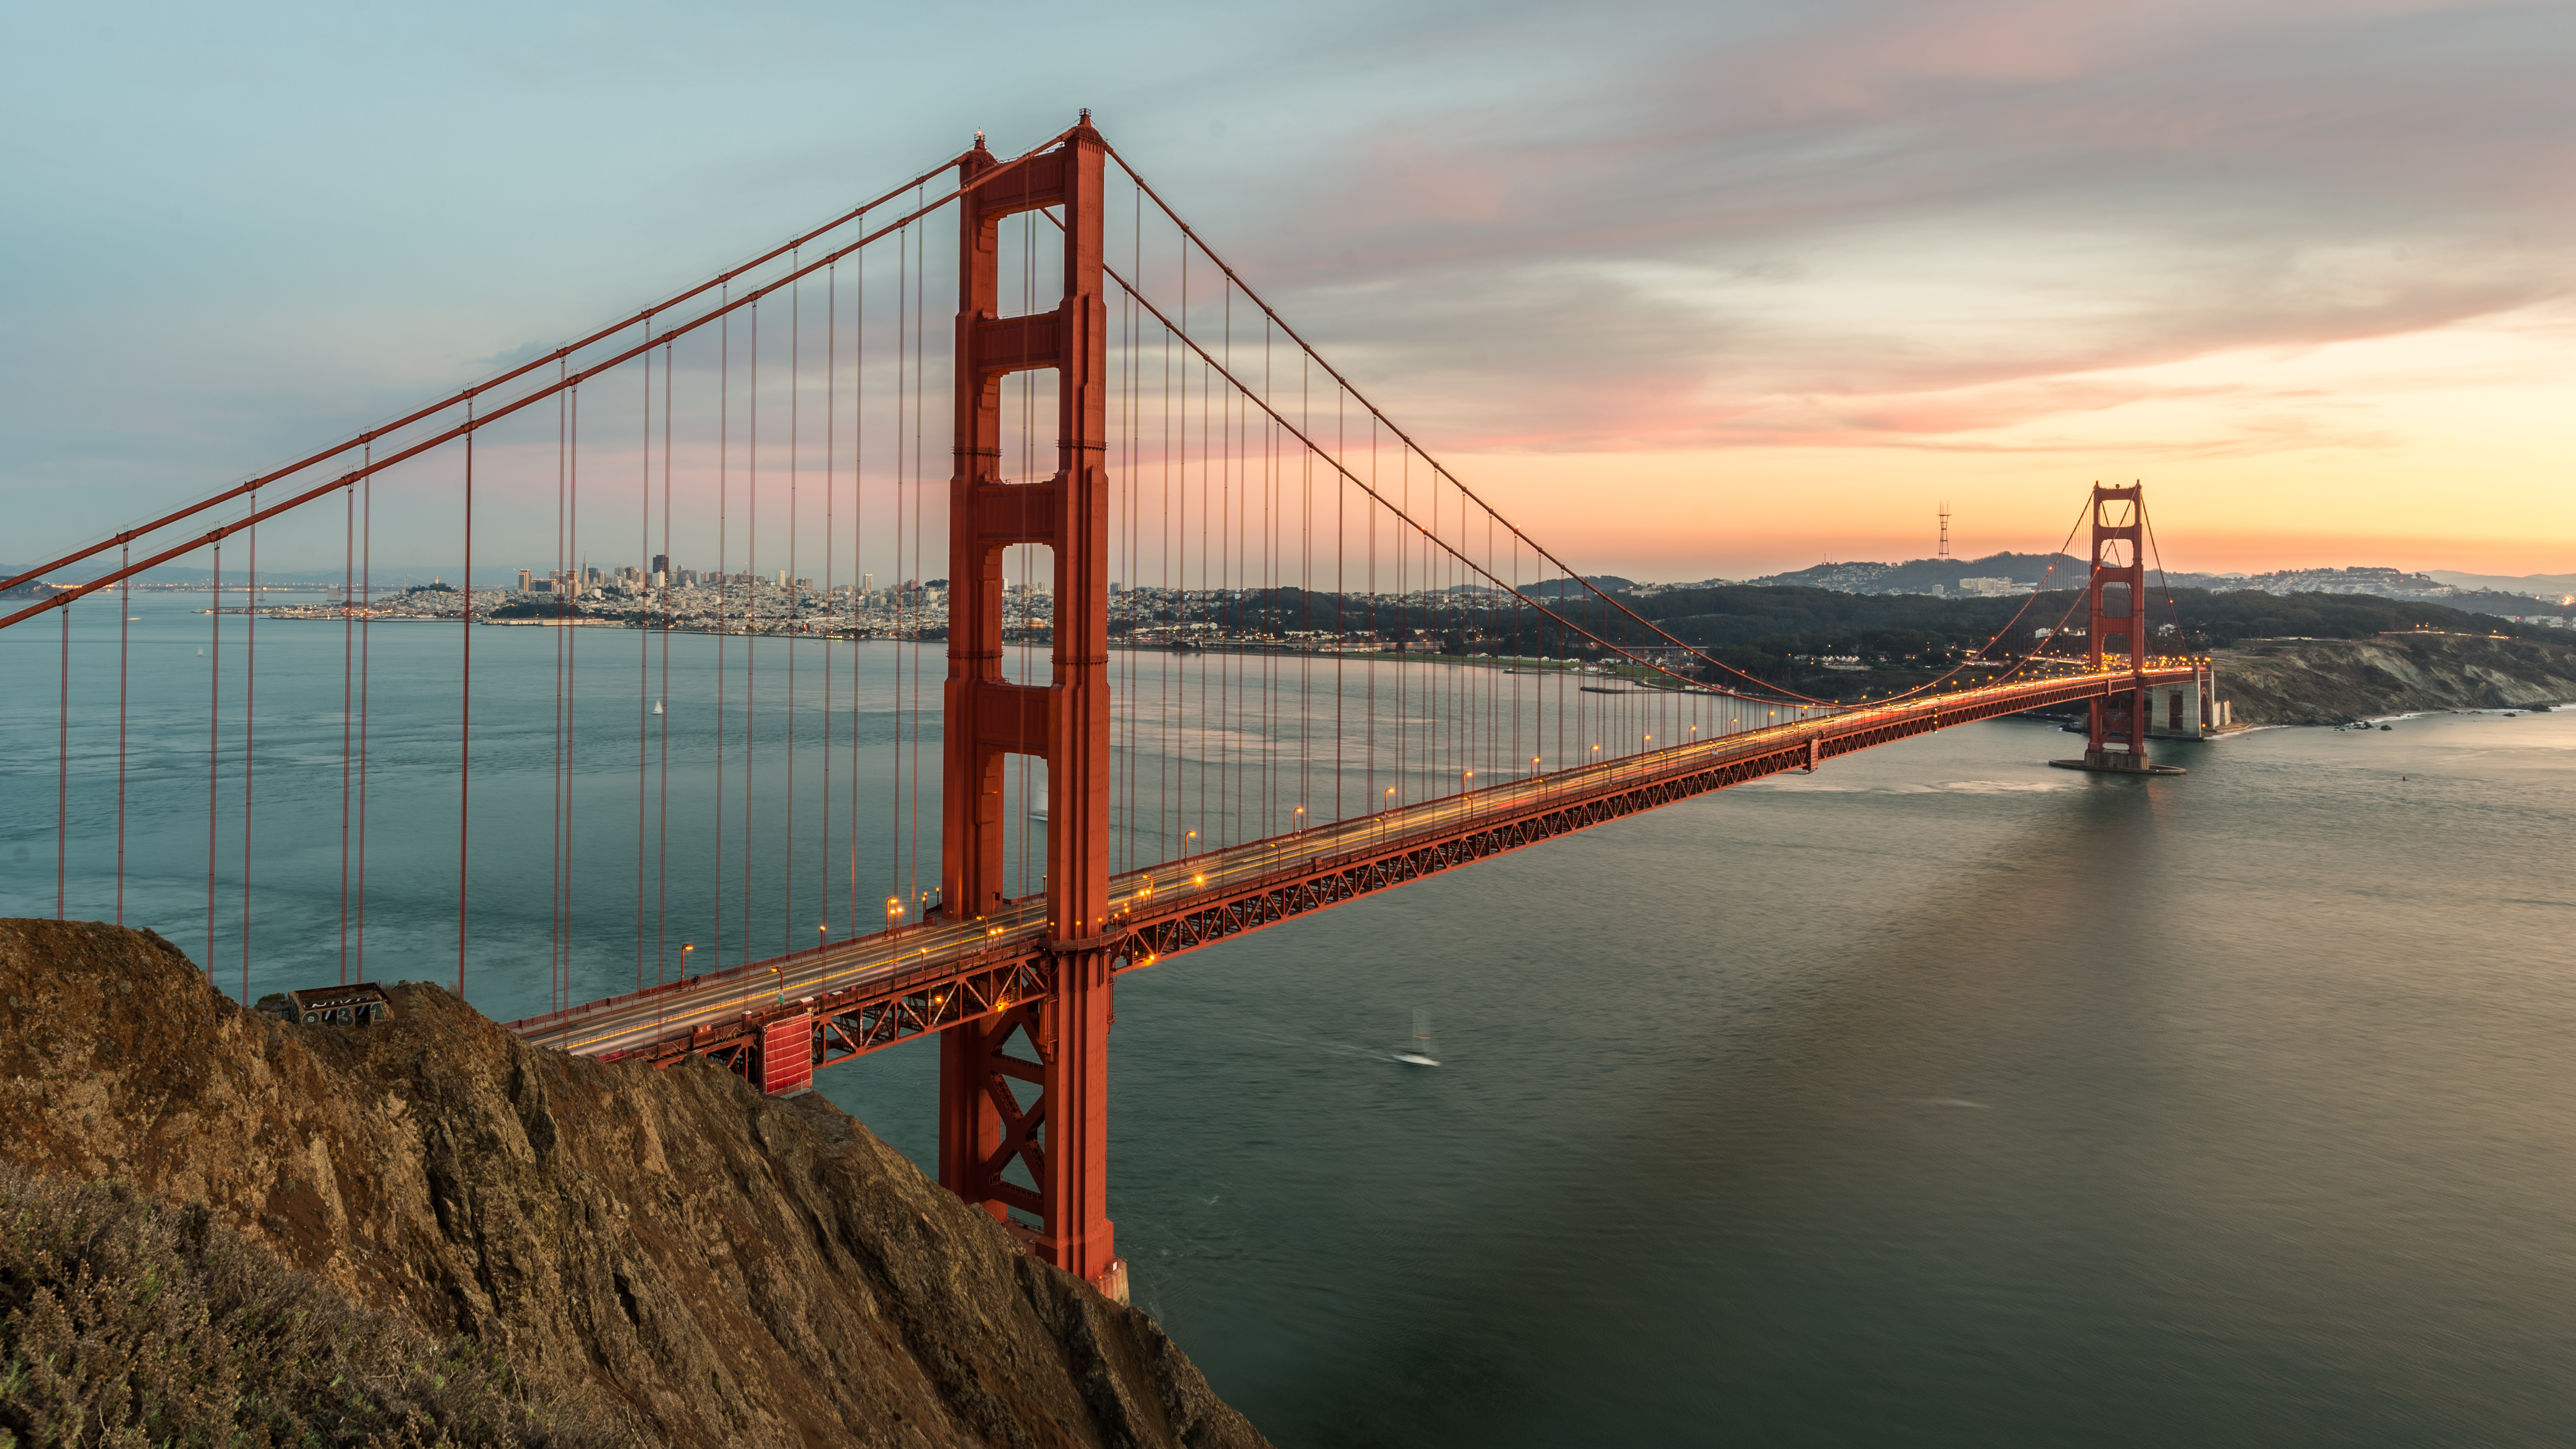 Сан франциско какой. Мост золотые ворота в Сан-Франциско. Мост Голден гейт Сан Франциско. МГСТ голдан геидс Сан Франциско. Красный мост в Сан Франциско.